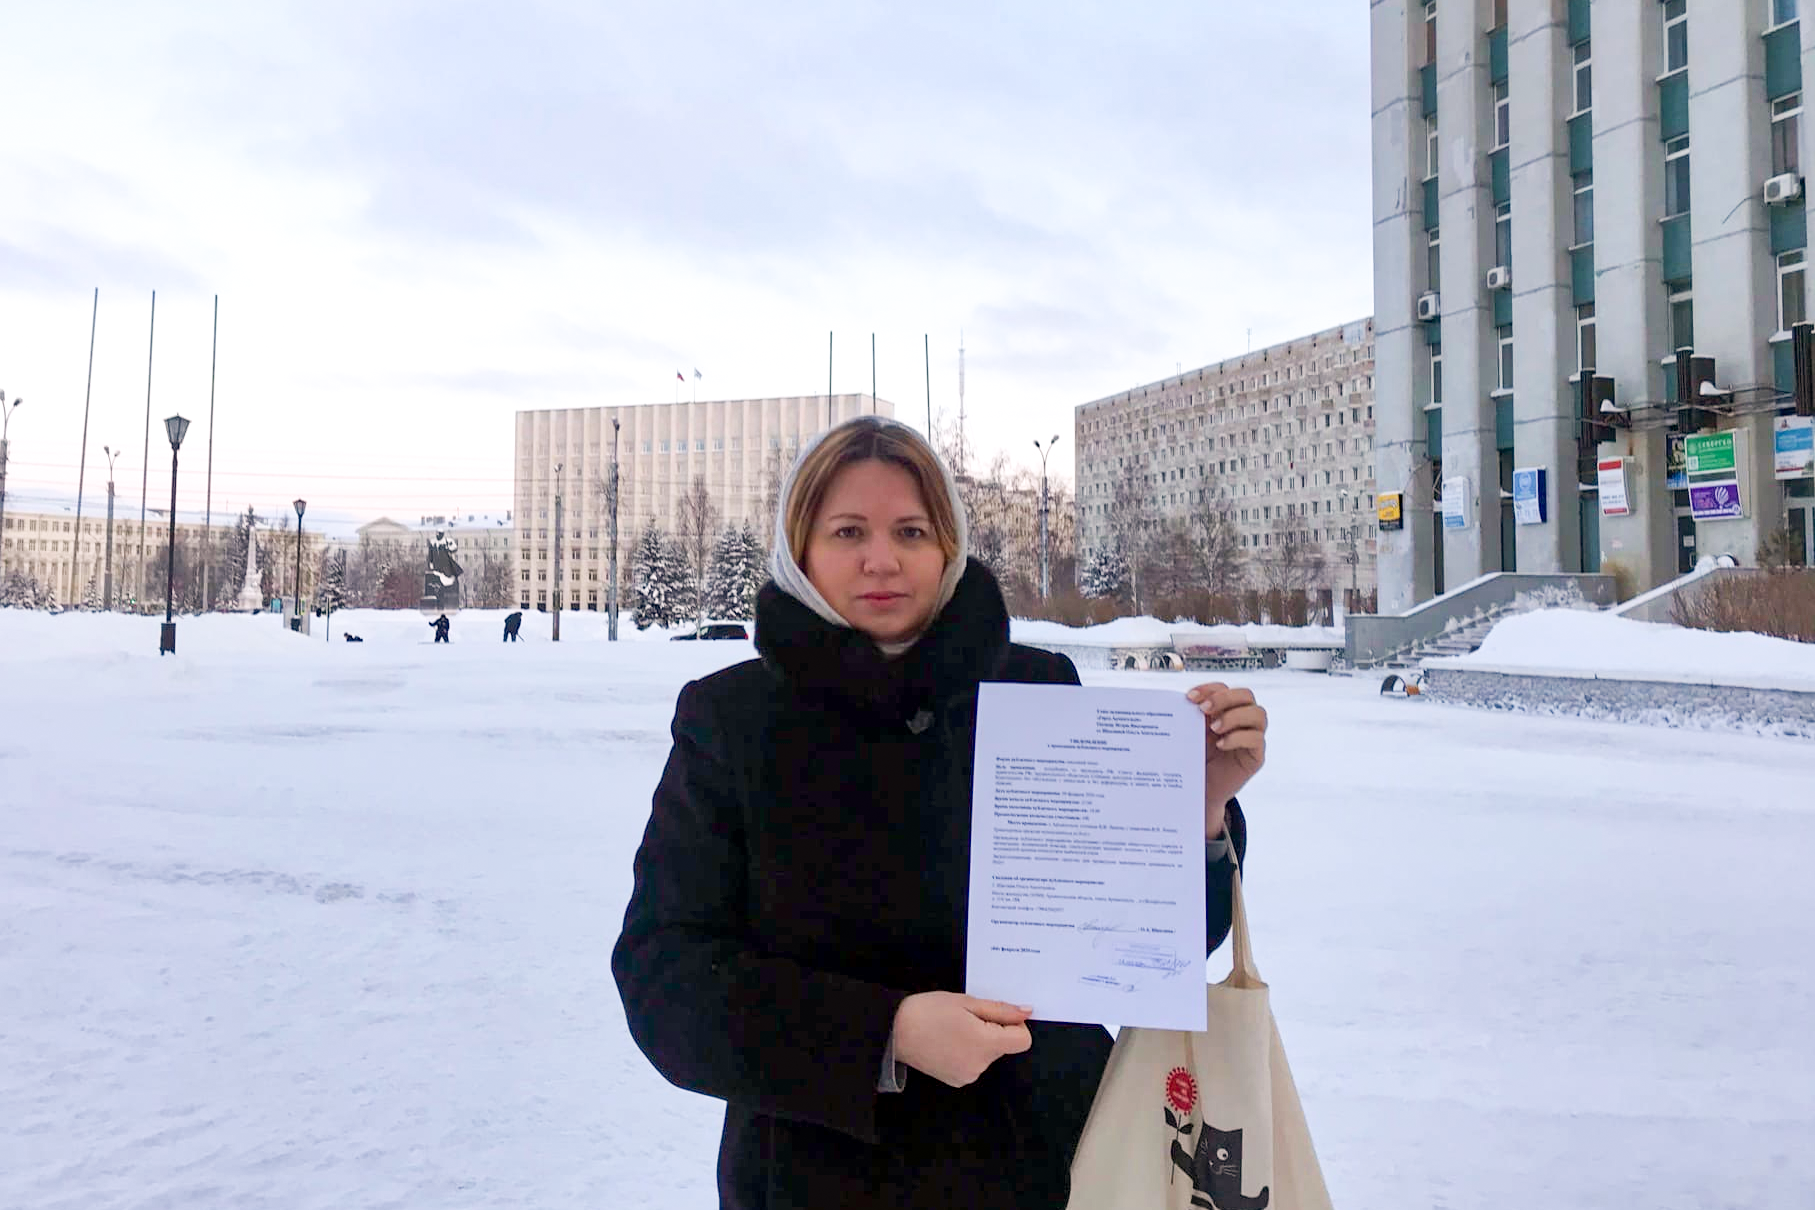 Архангельские активисты снова подали уведомление на пикет против поправок в Конституцию